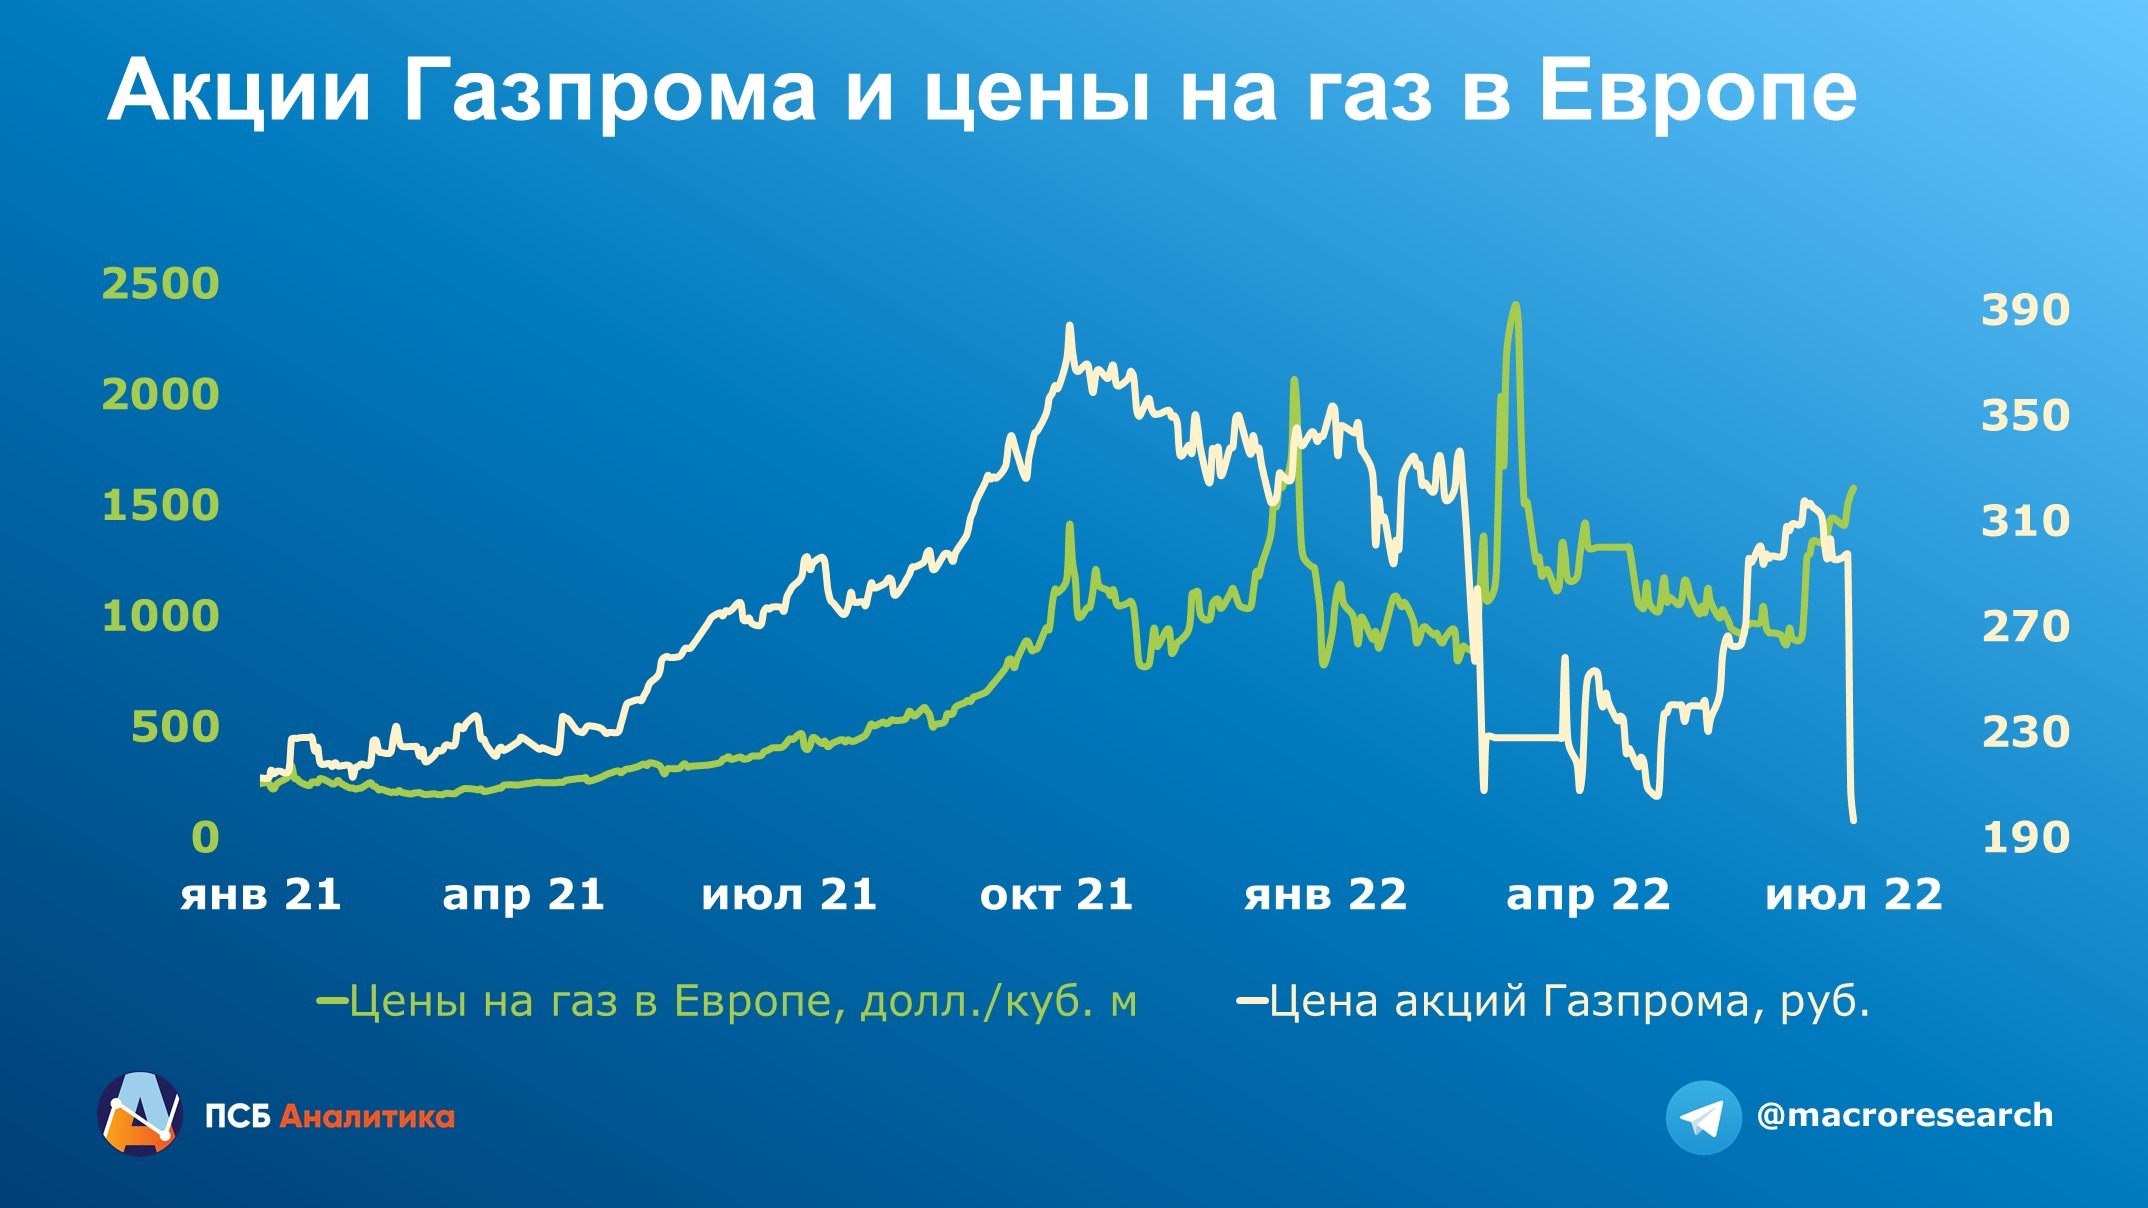 Что будет дальше с Газпромом?